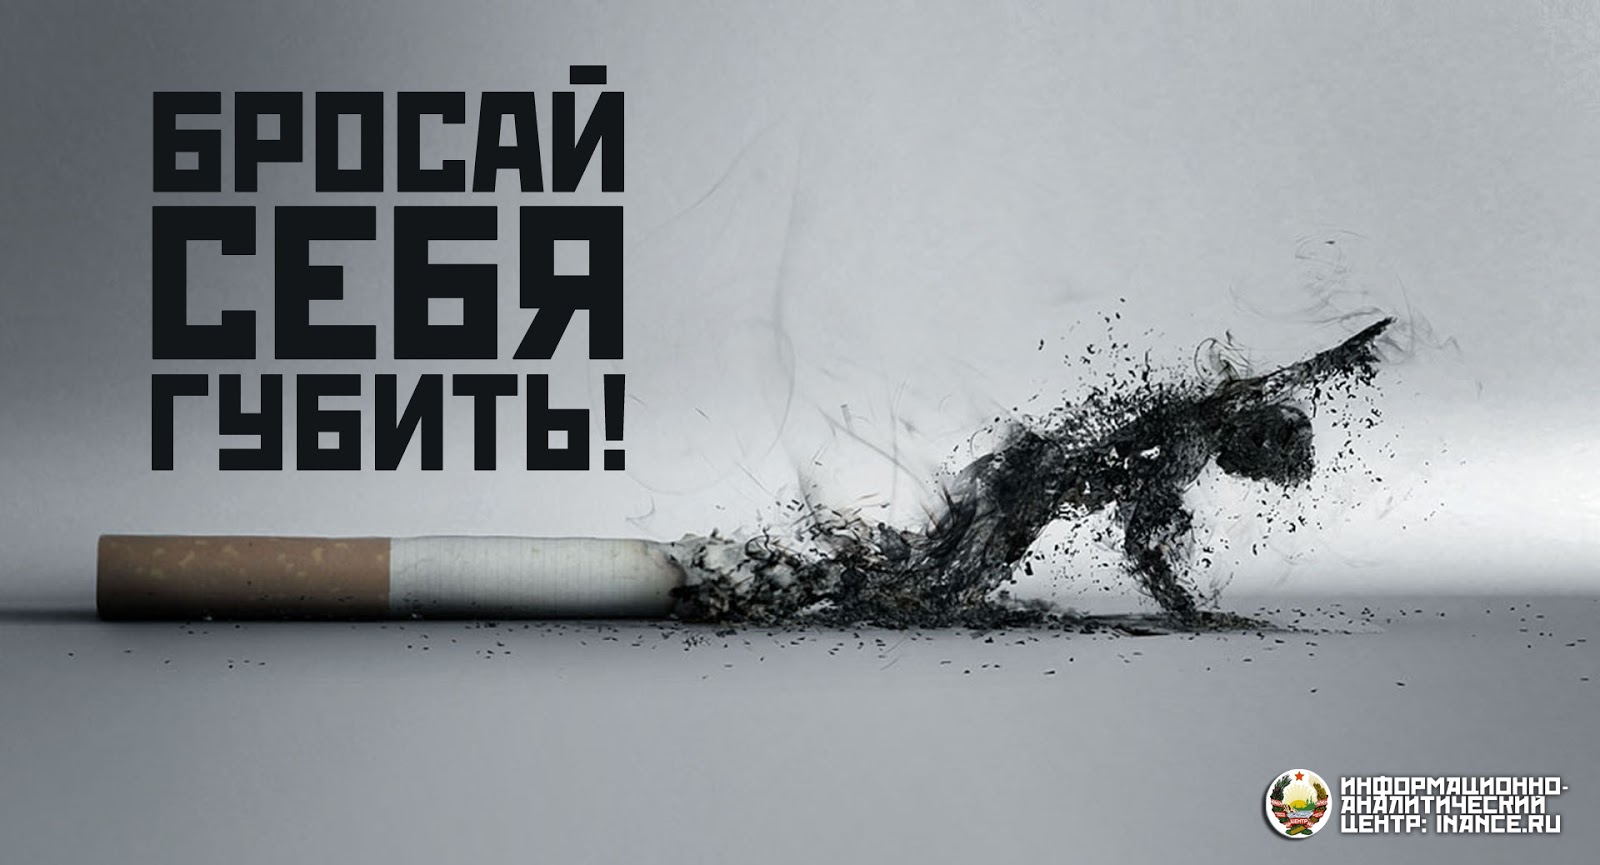 Кидай тему. Против курения. Плакат против курения. Против сигарет. Баннер против курения.